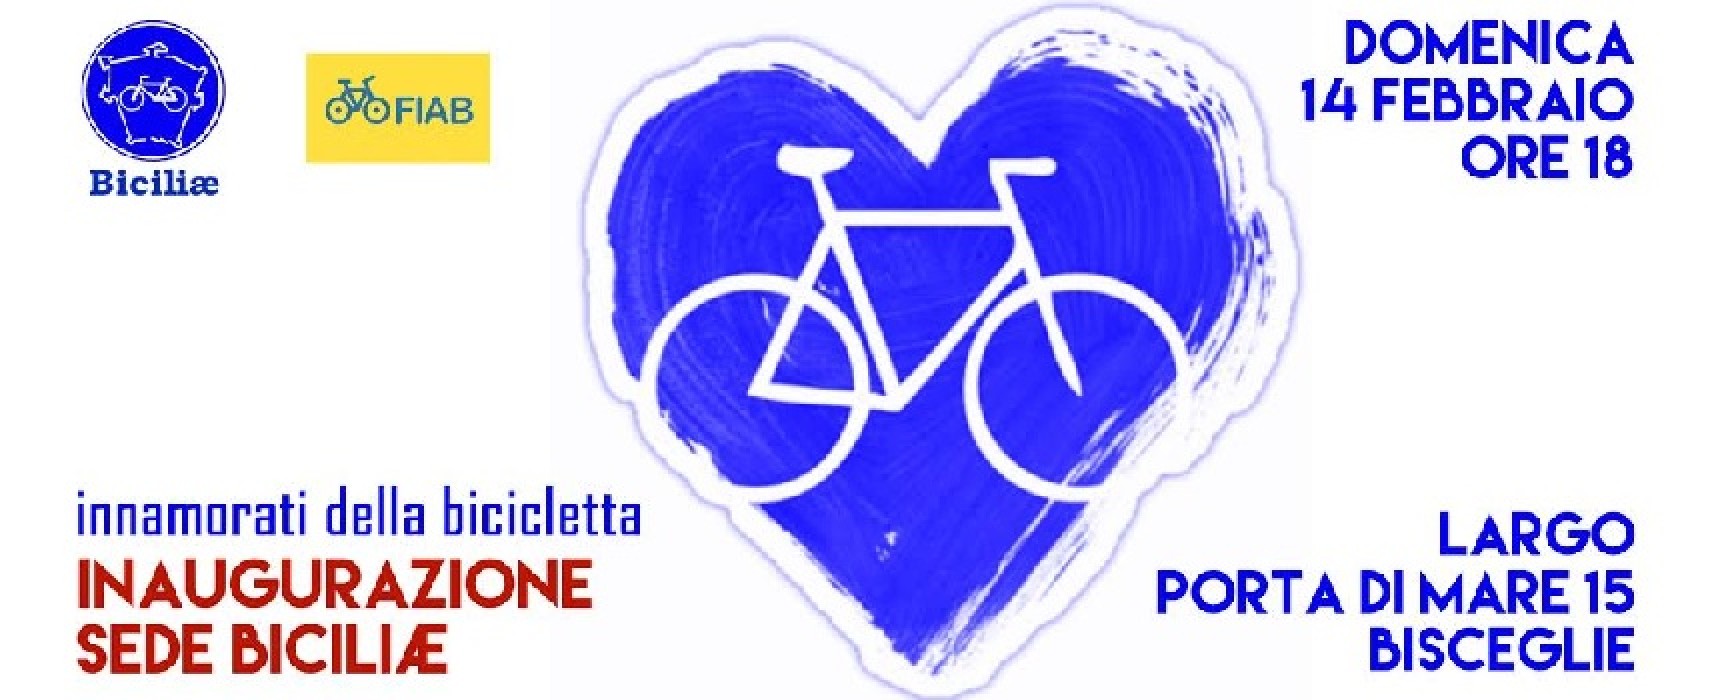 “A San Valentino innamorati della bicicletta”, Biciliae oggi inaugura la sua nuova sede